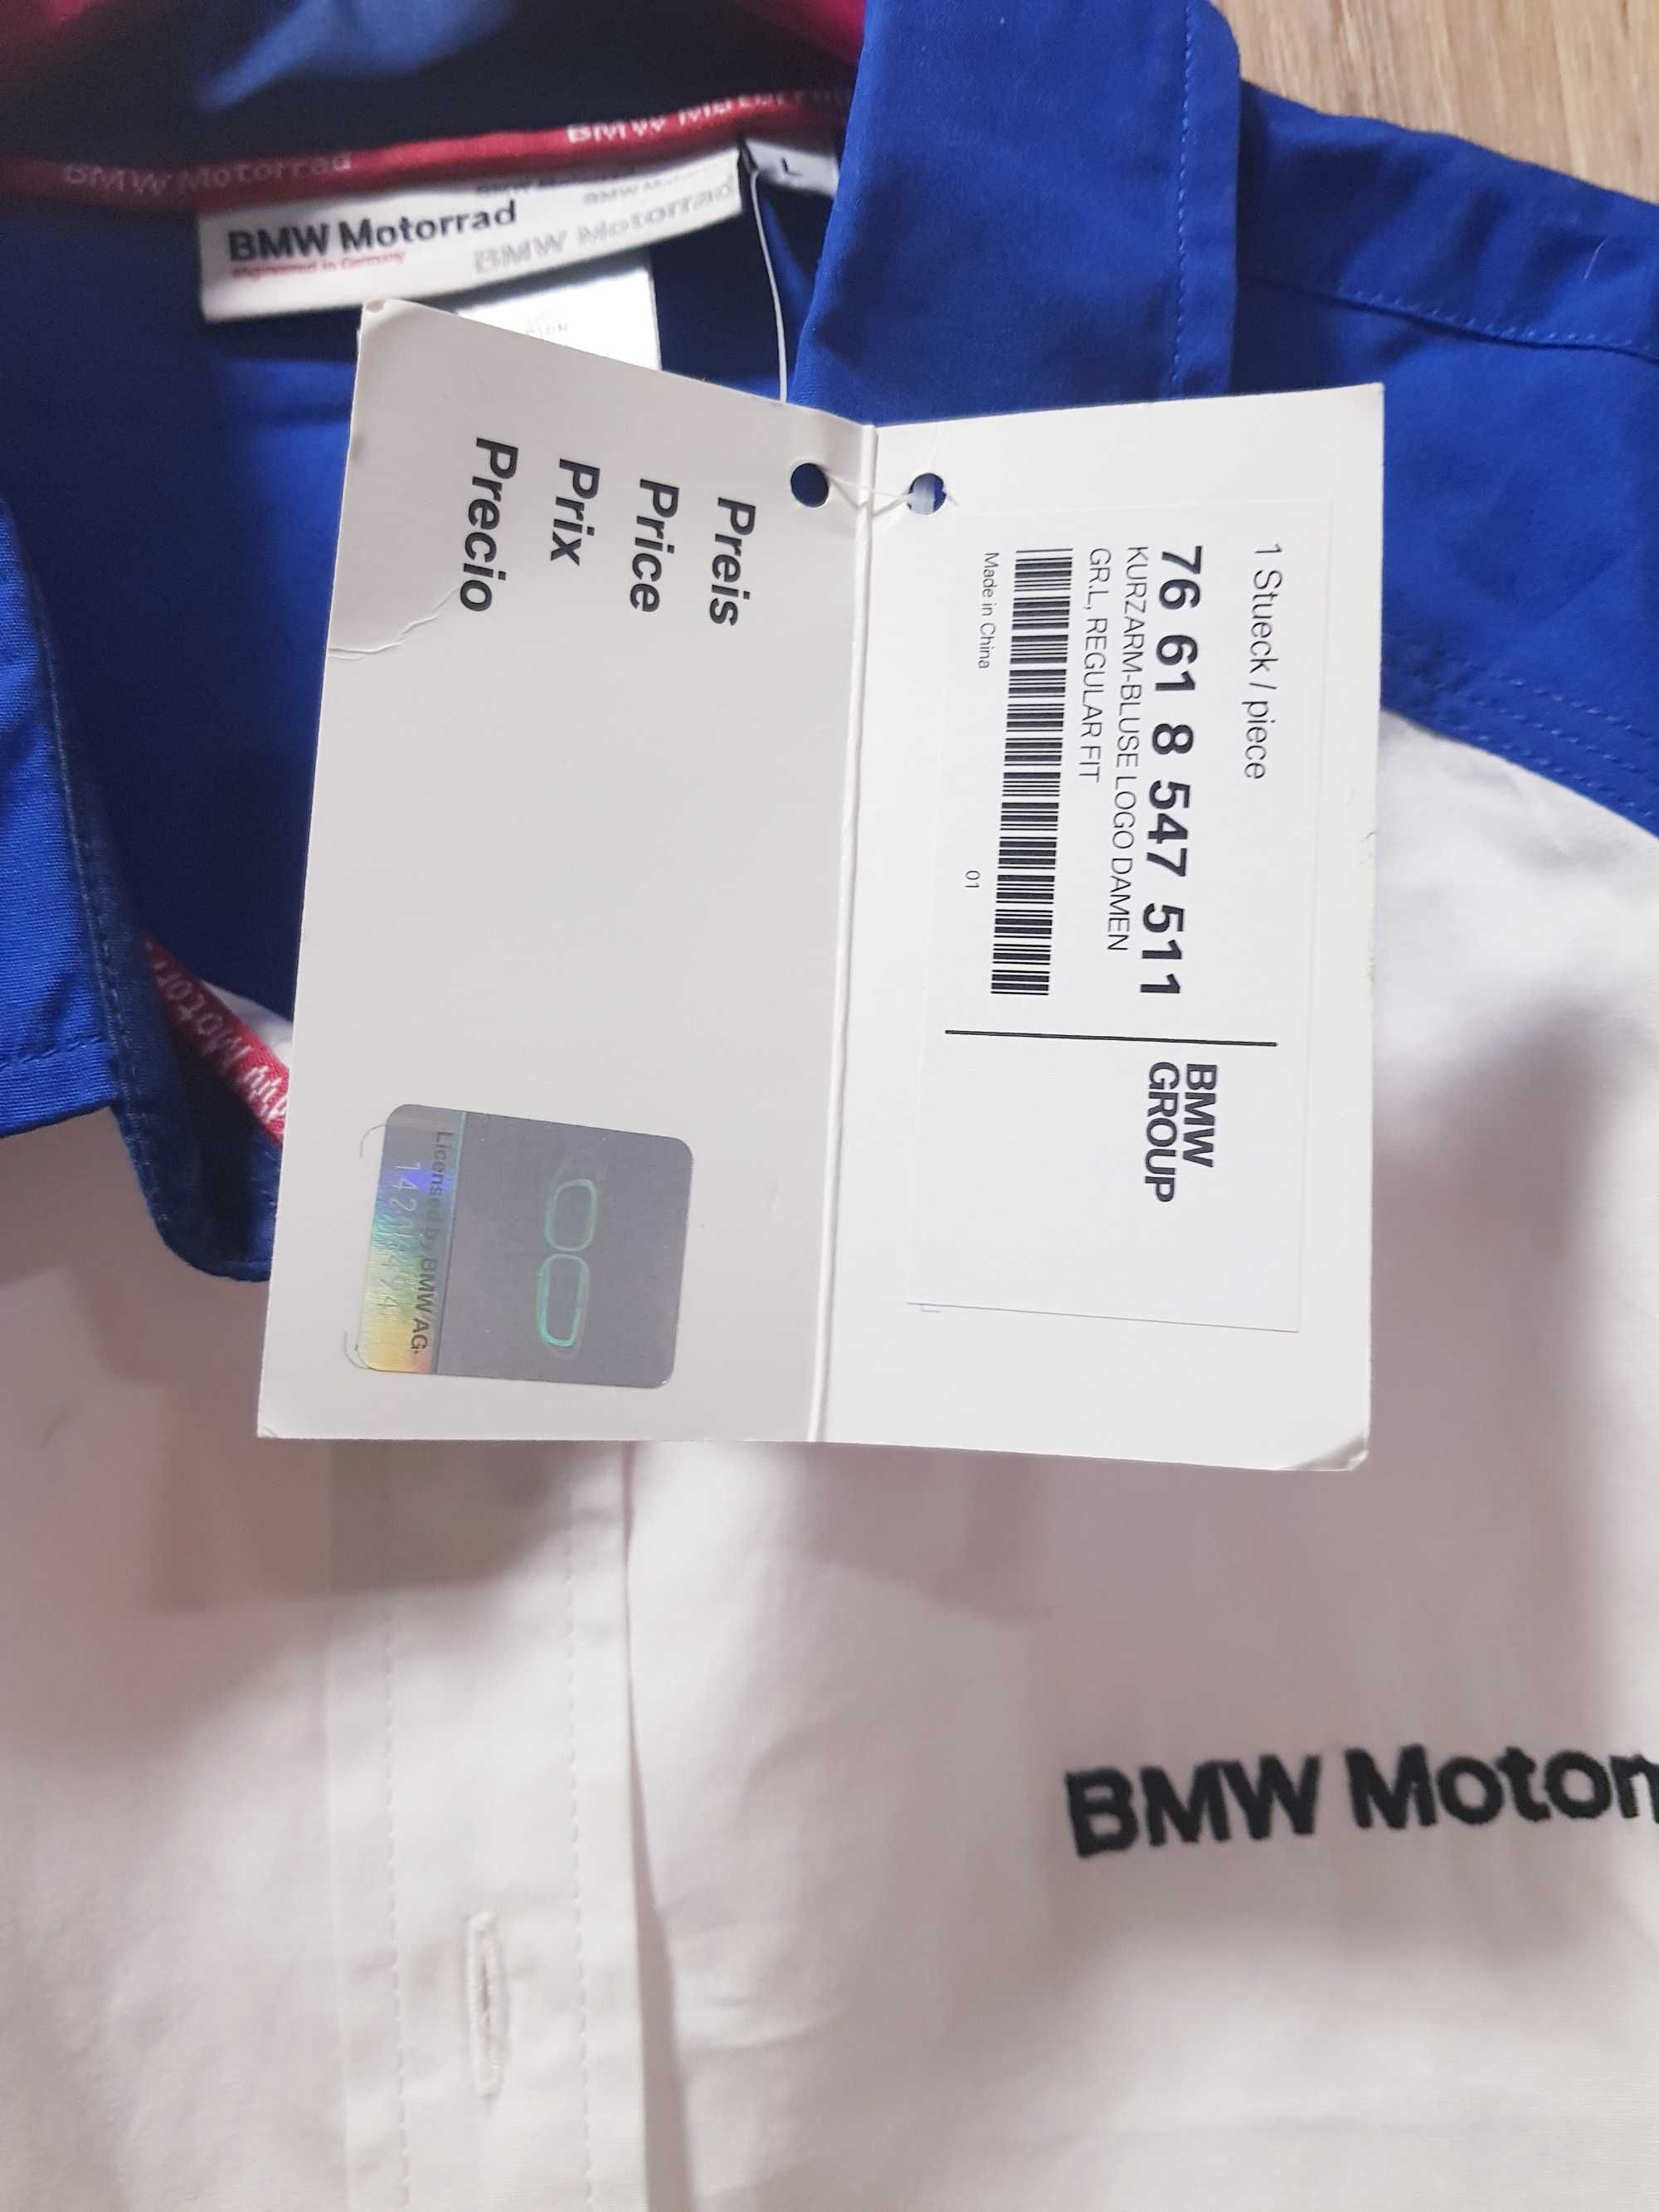 Bluzka Koszula BMW Motorrad damska rozmiar L